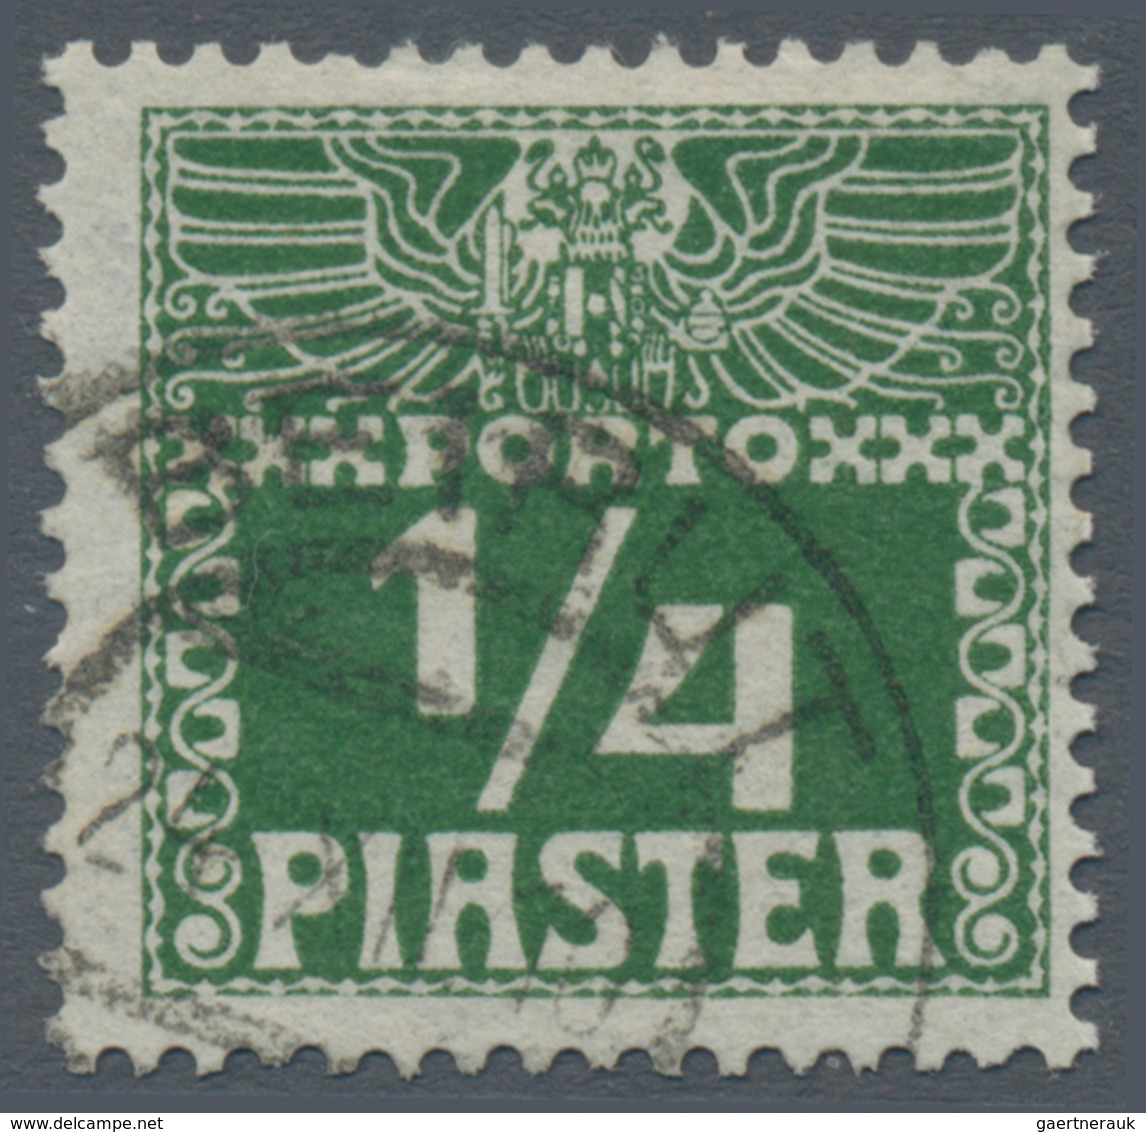 Österreichische Post In Der Levante - Portomarken: 1908, ¼ Piaster Bis 30 Piaster In B-Farbe Dunkelg - Levante-Marken